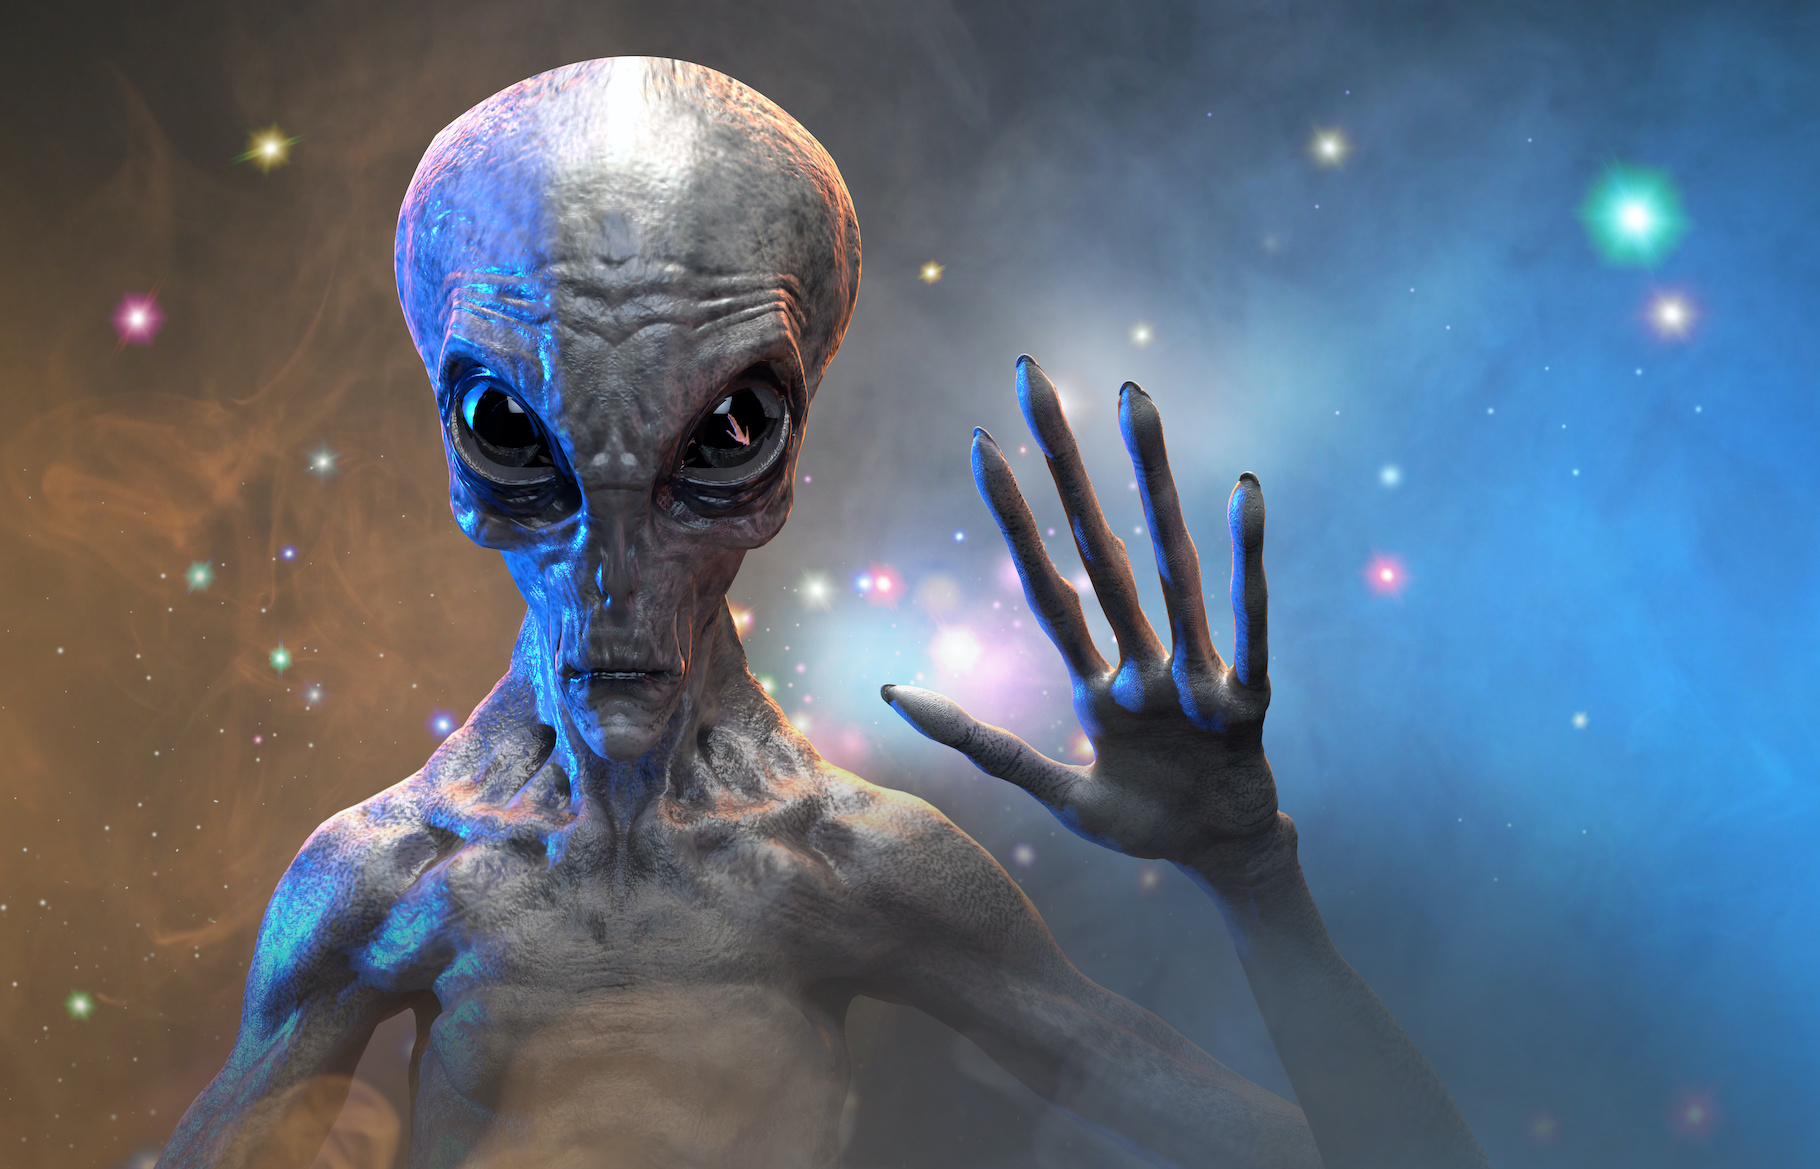 Un extraterrestre ressemble-t-il vraiment à cette image d'artiste ? © de Art, Adobe Stock